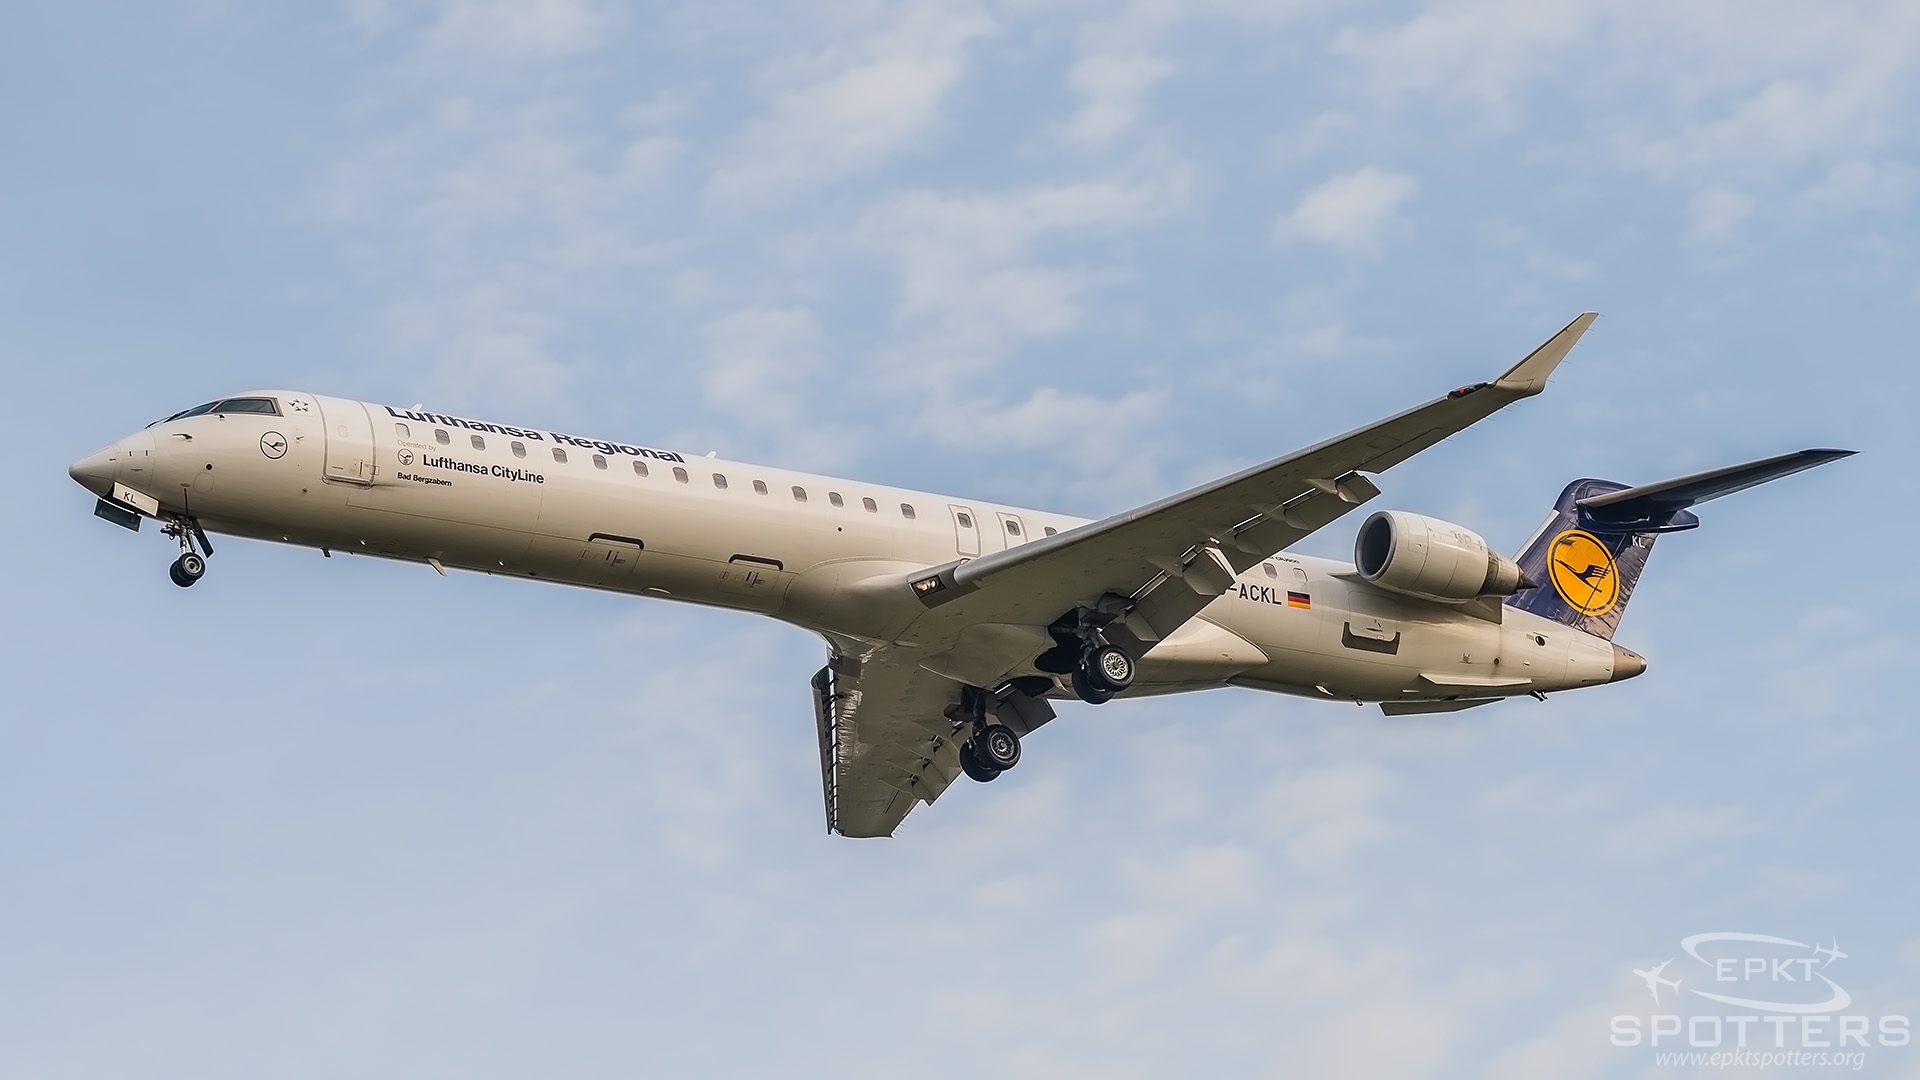 D-ACKL - Bombardier CRJ -900LR (Lufthansa CityLine) / Balice - Krakow Poland [EPKK/KRK]